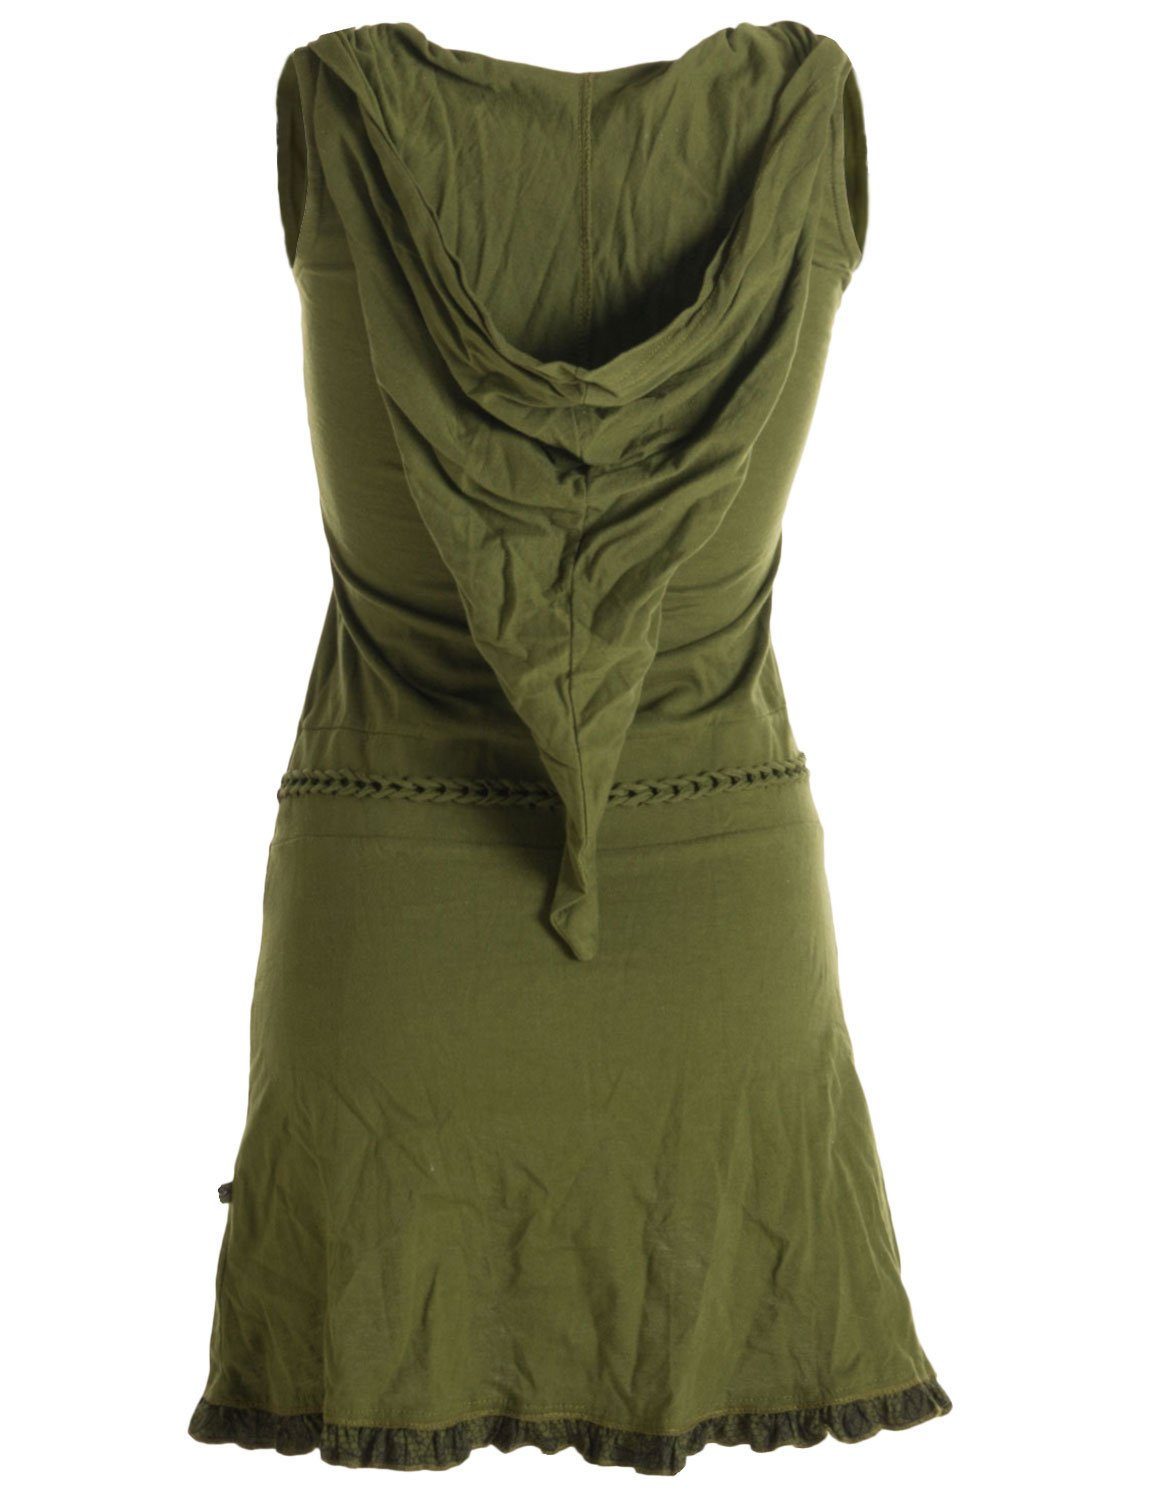 Vishes Zipfelkleid Asymmetrisches Lagenlook Baumwollkleid und Rüschen, Flechtwerk Zipfelkapuze mit olivegrün